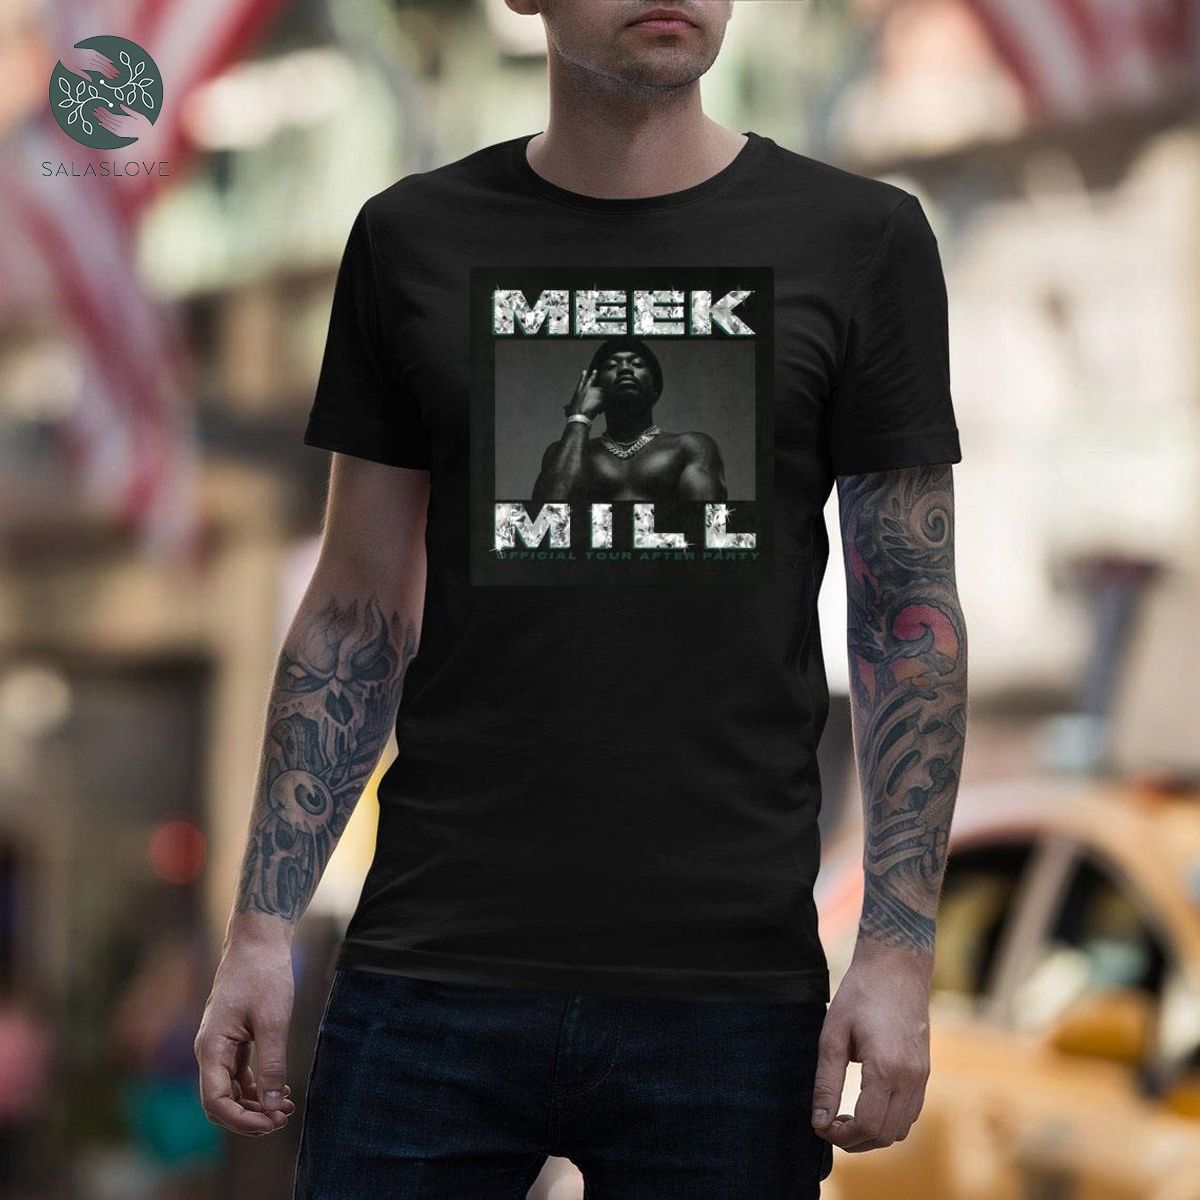 Meek Mill Releases New Song & Video Early Mornings Hoodie